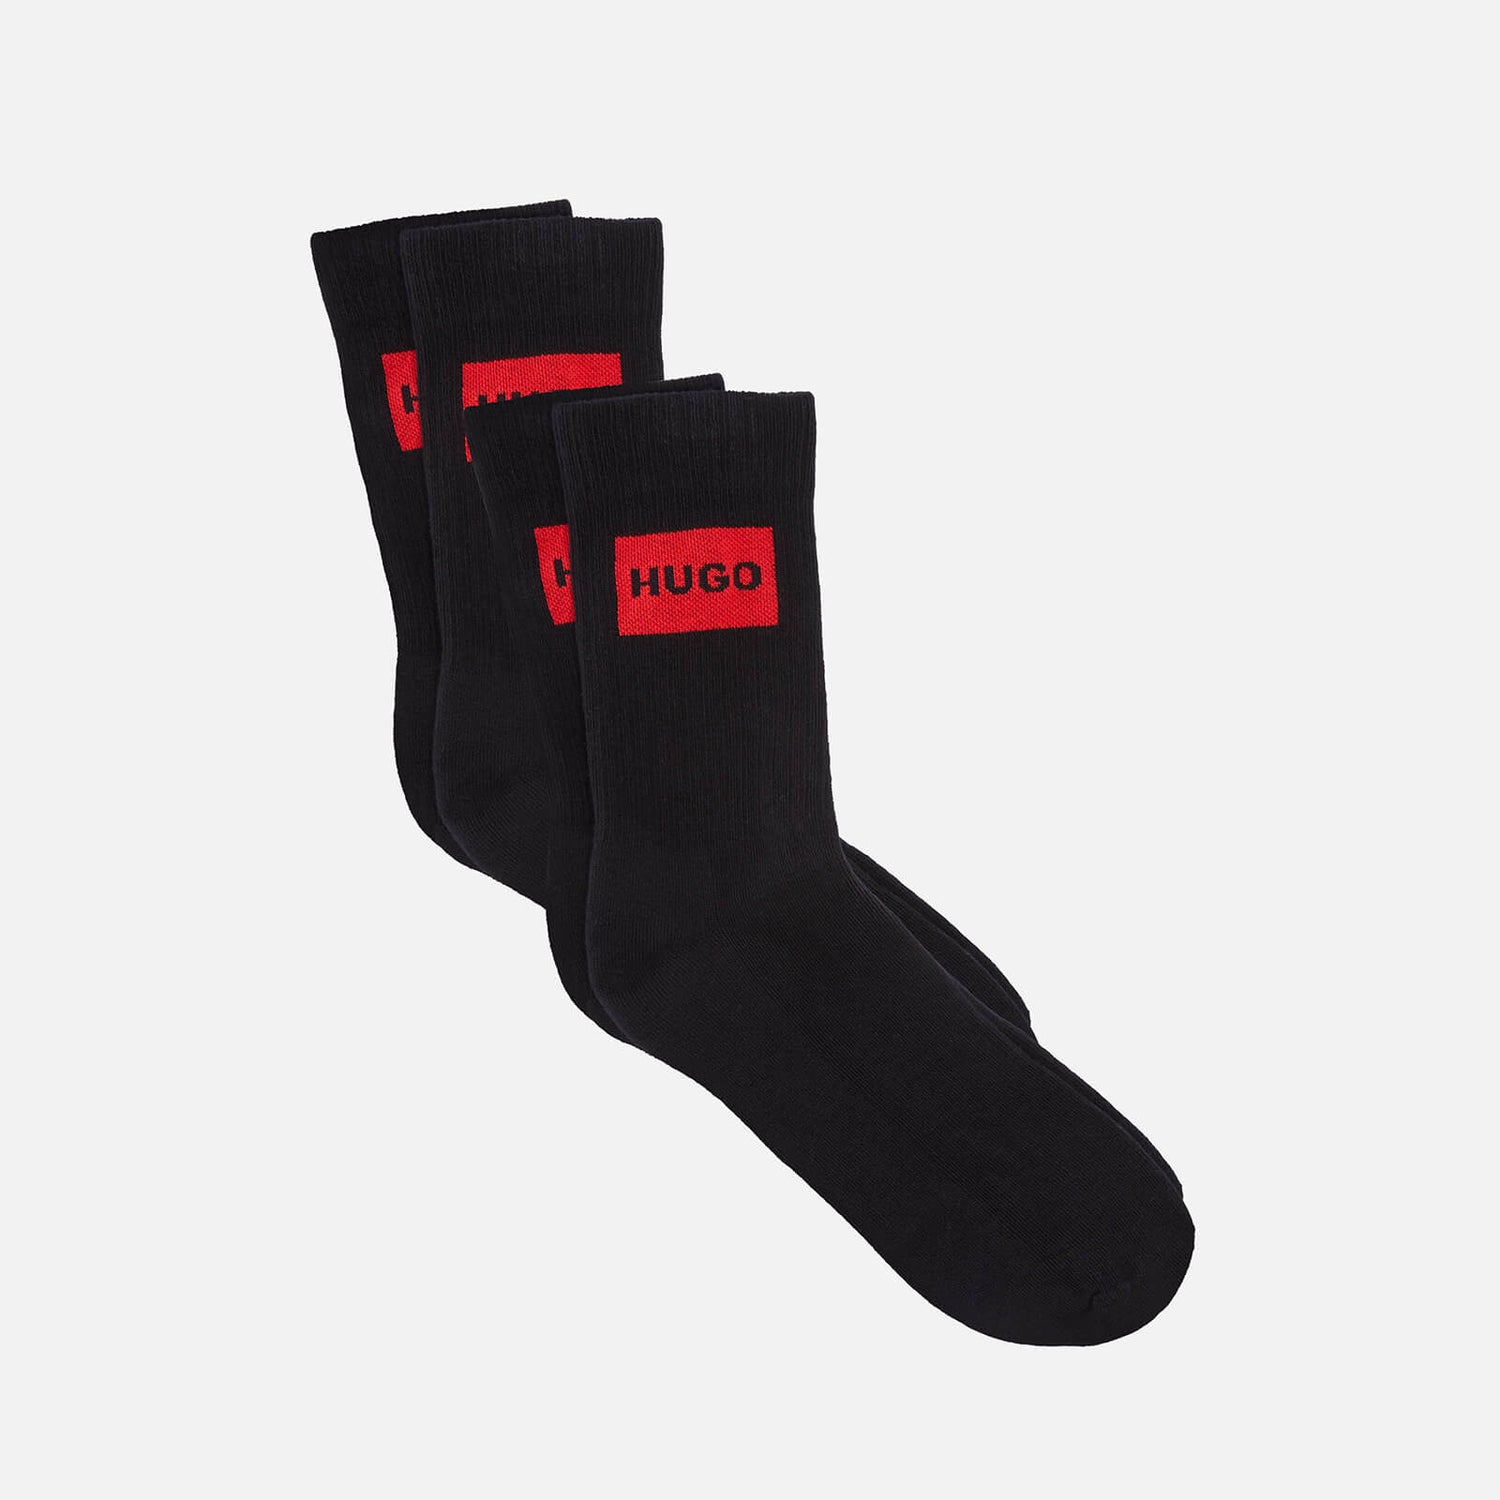 HUGO Bodywear Men's Ribbed Label 2-Pack Socks - Black